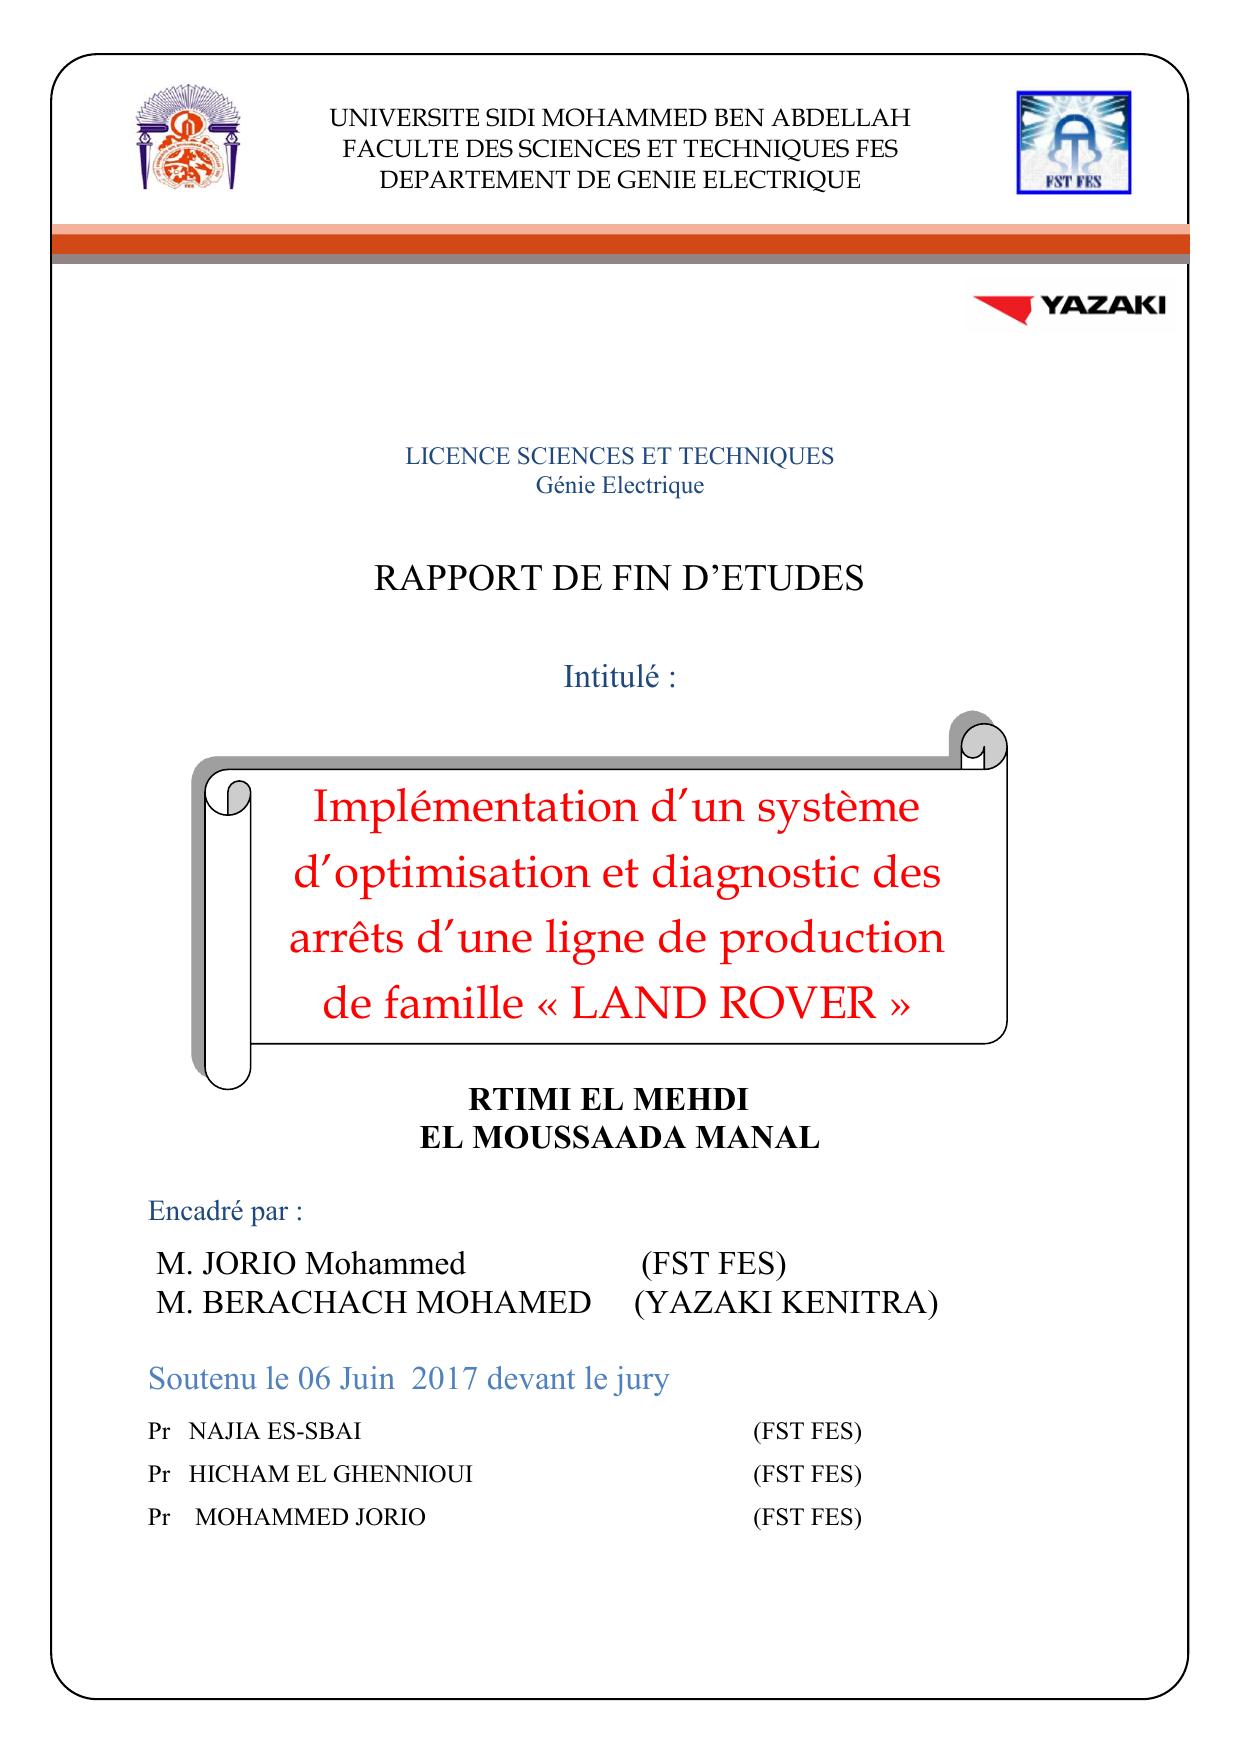 Implémentation d’un système d’optimisation et diagnostic des arrêts d’une ligne de production de famille « LAND ROVER »